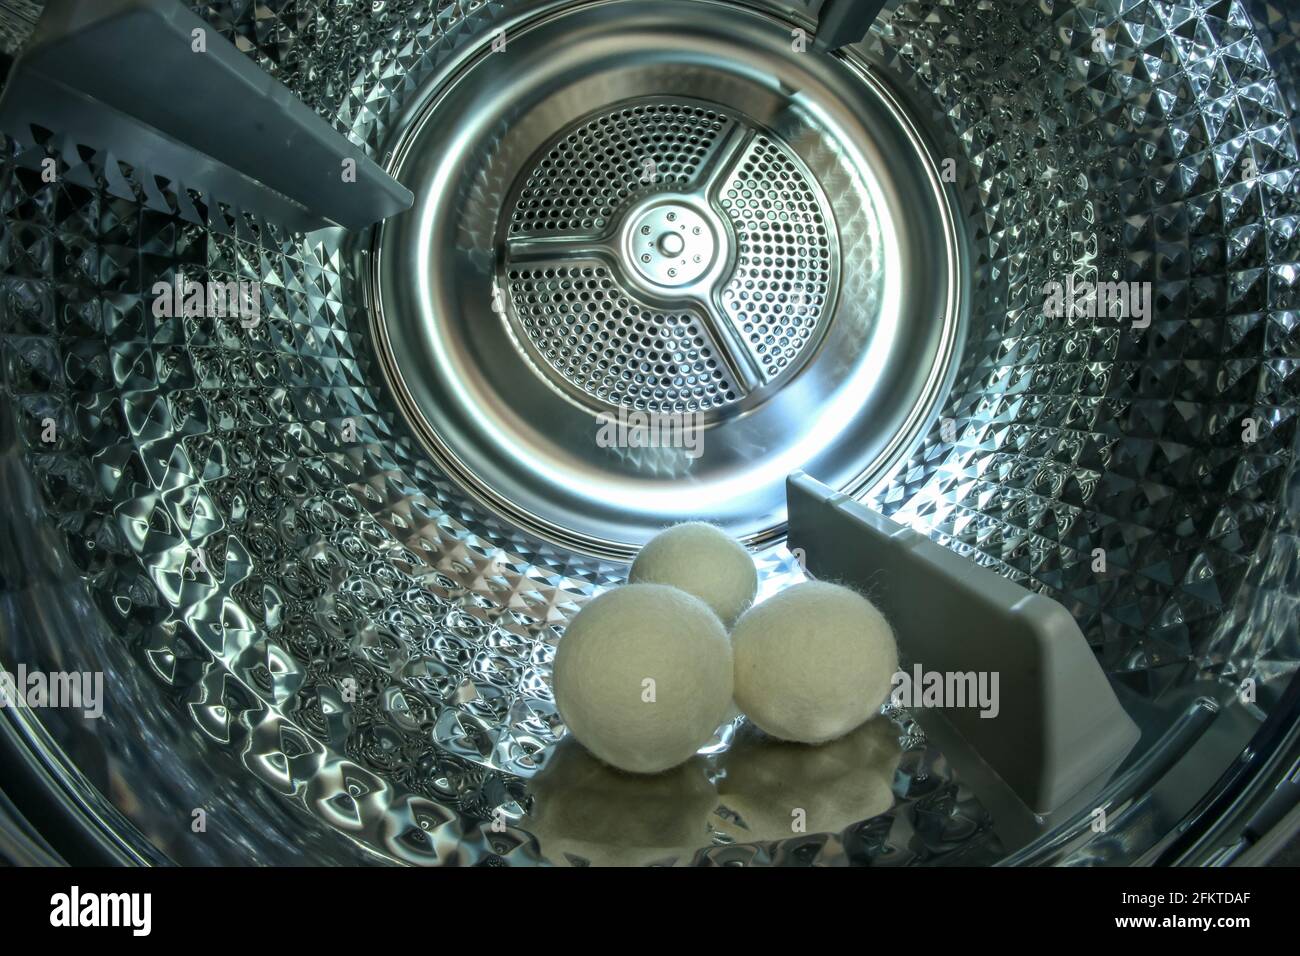 Lo sguardo all'interno del tamburo metallico lucido del moderno asciugatore  con tre sfere che aiutano ad asciugare i vestiti più velocemente Foto stock  - Alamy